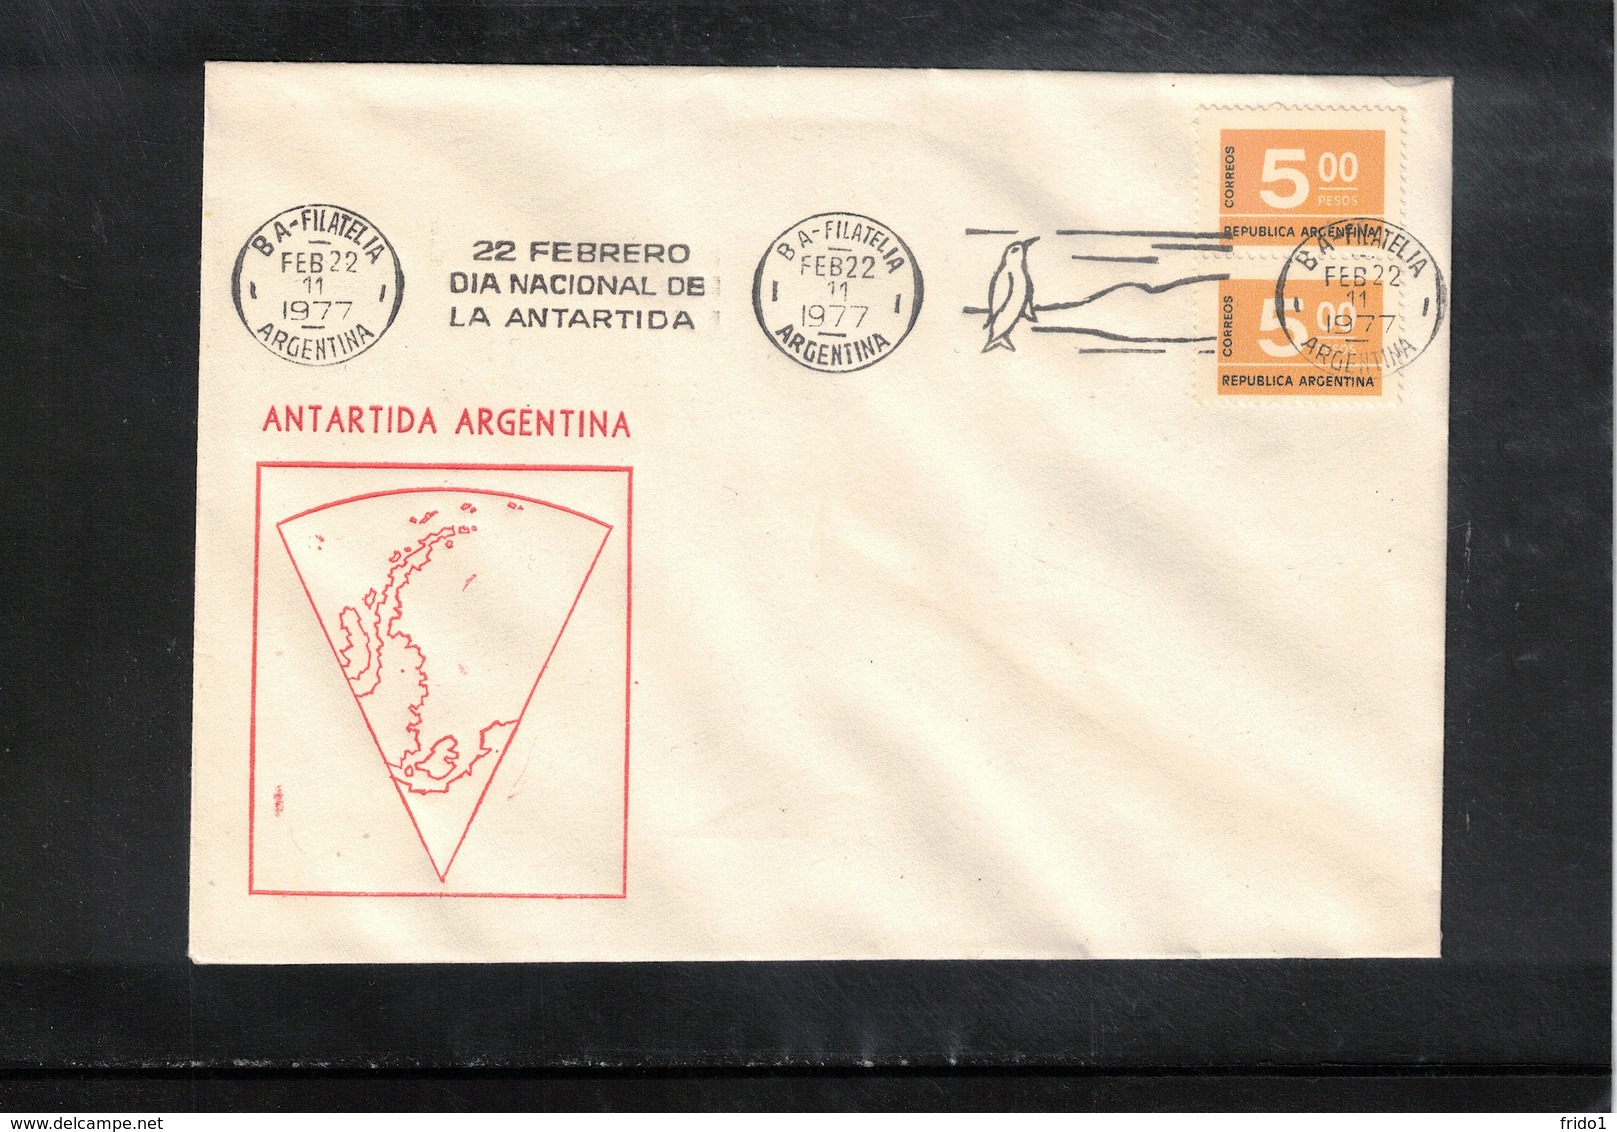 Argentina 1977 Argentinian Antarctica Interesting Cover - Eventi E Commemorazioni